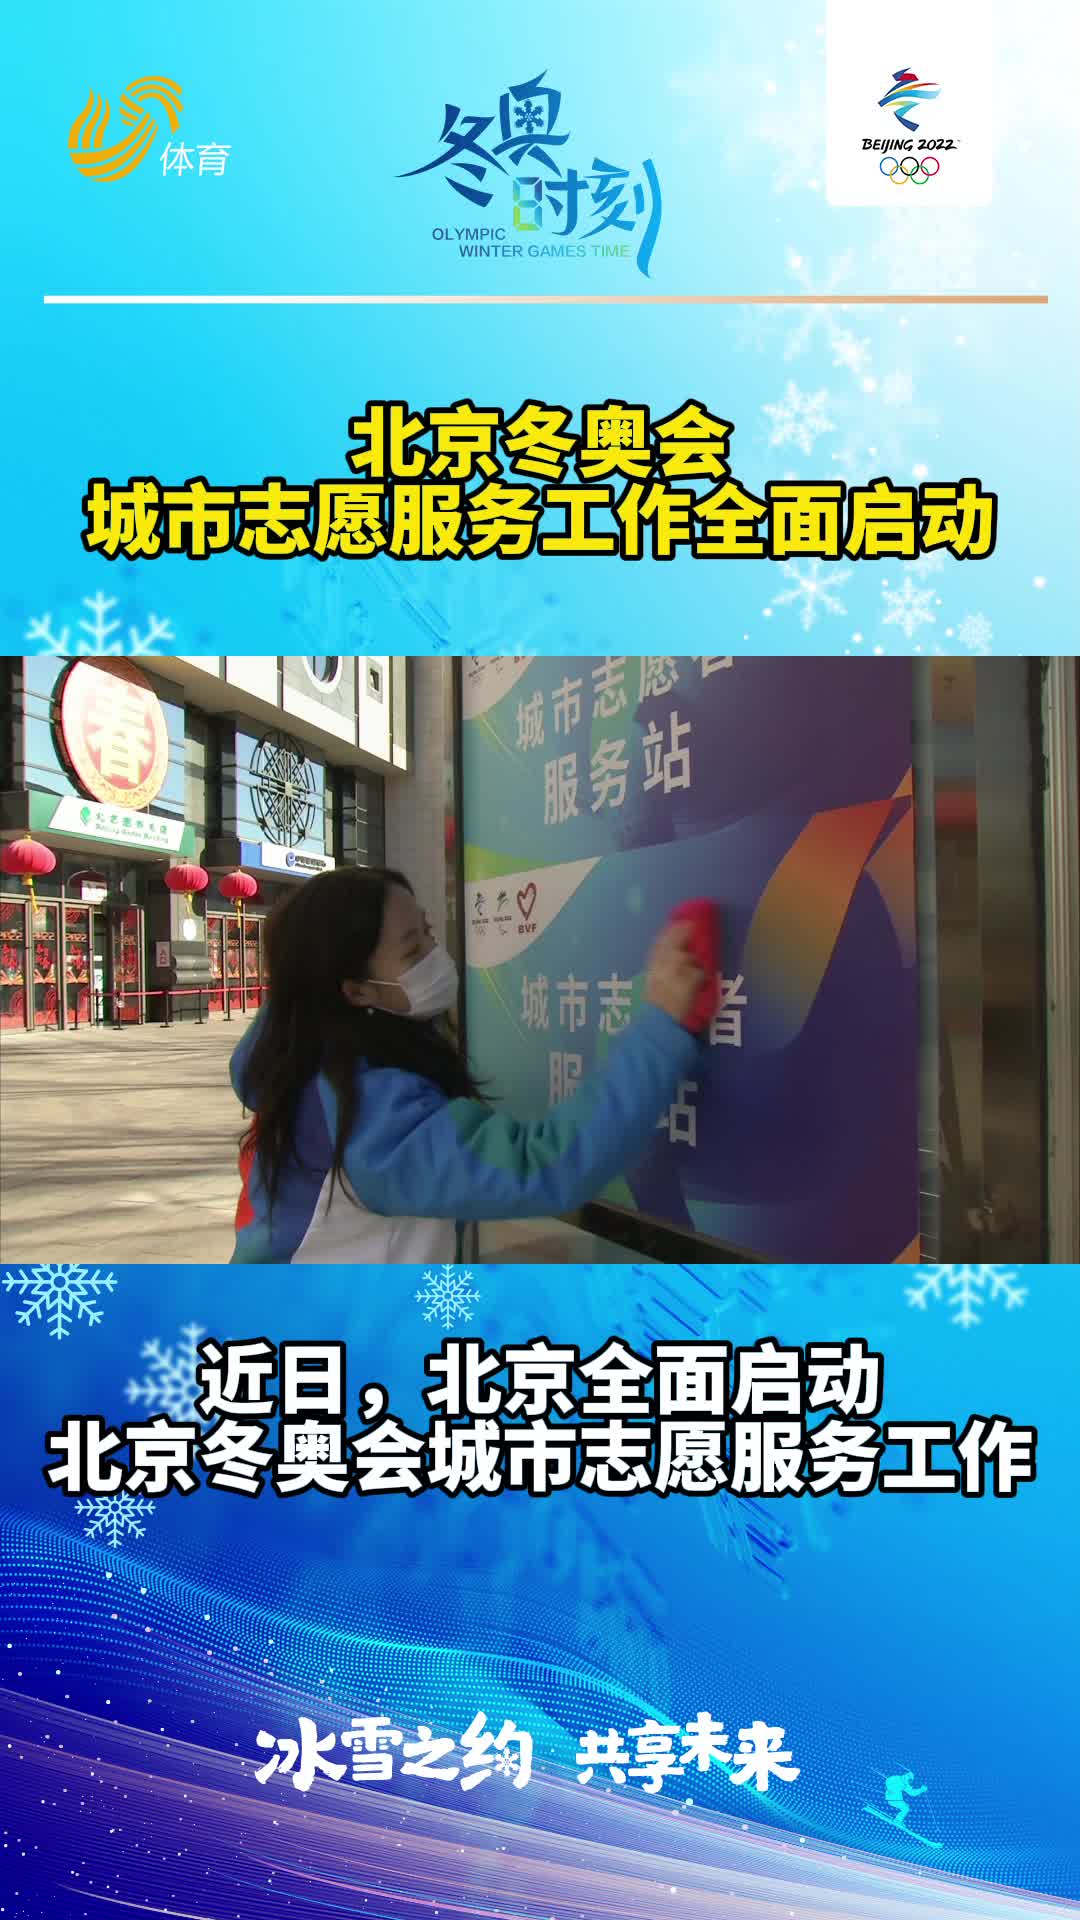 冬奥时刻丨北京冬奥会城市志愿服务工作全面启动